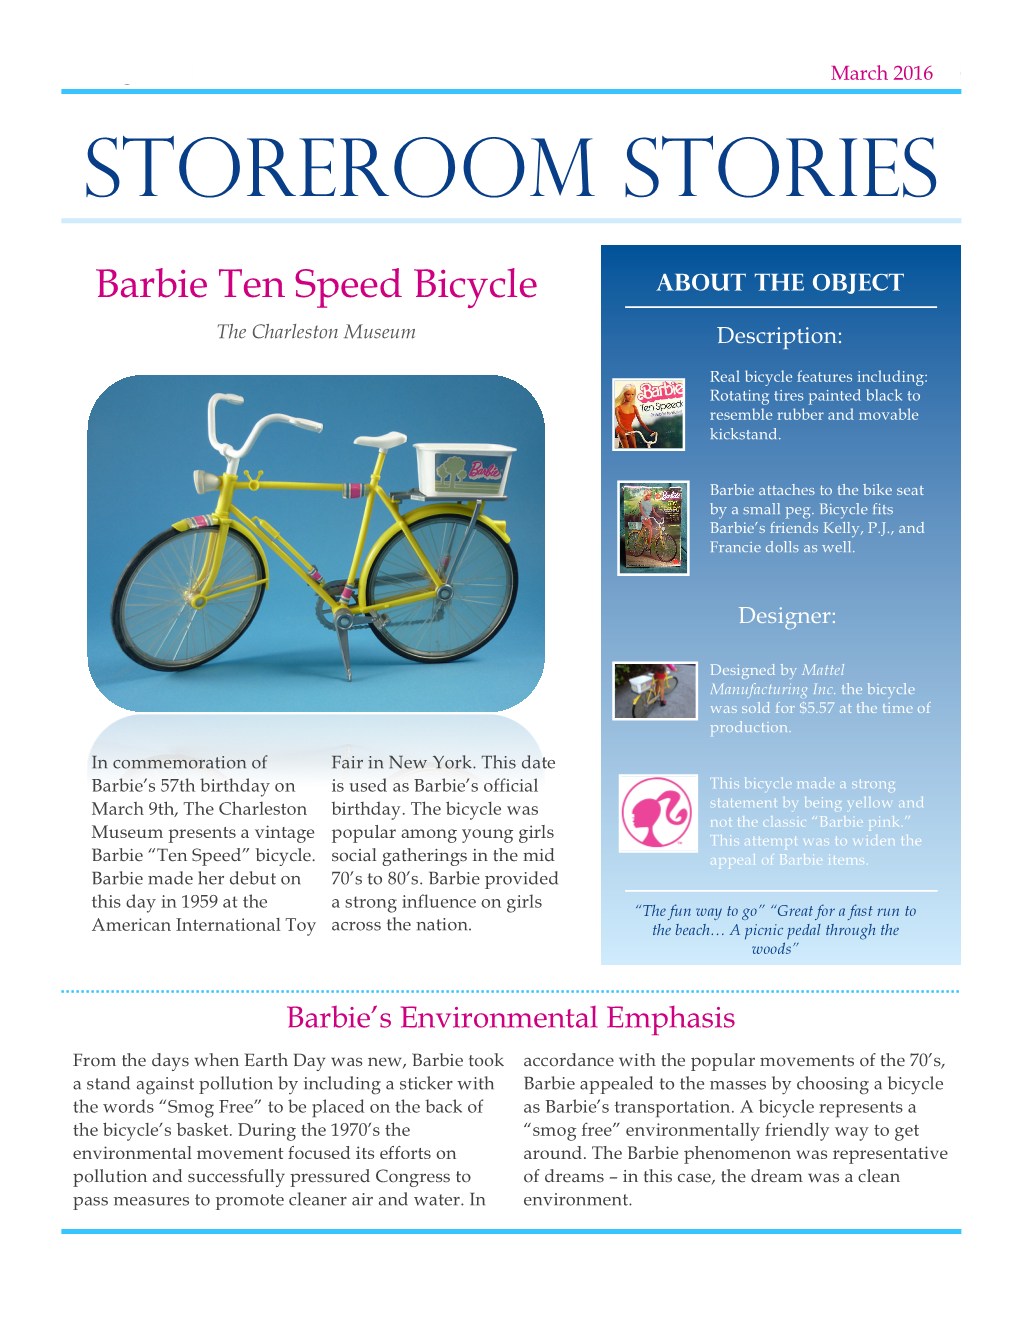 Storeroom Stories